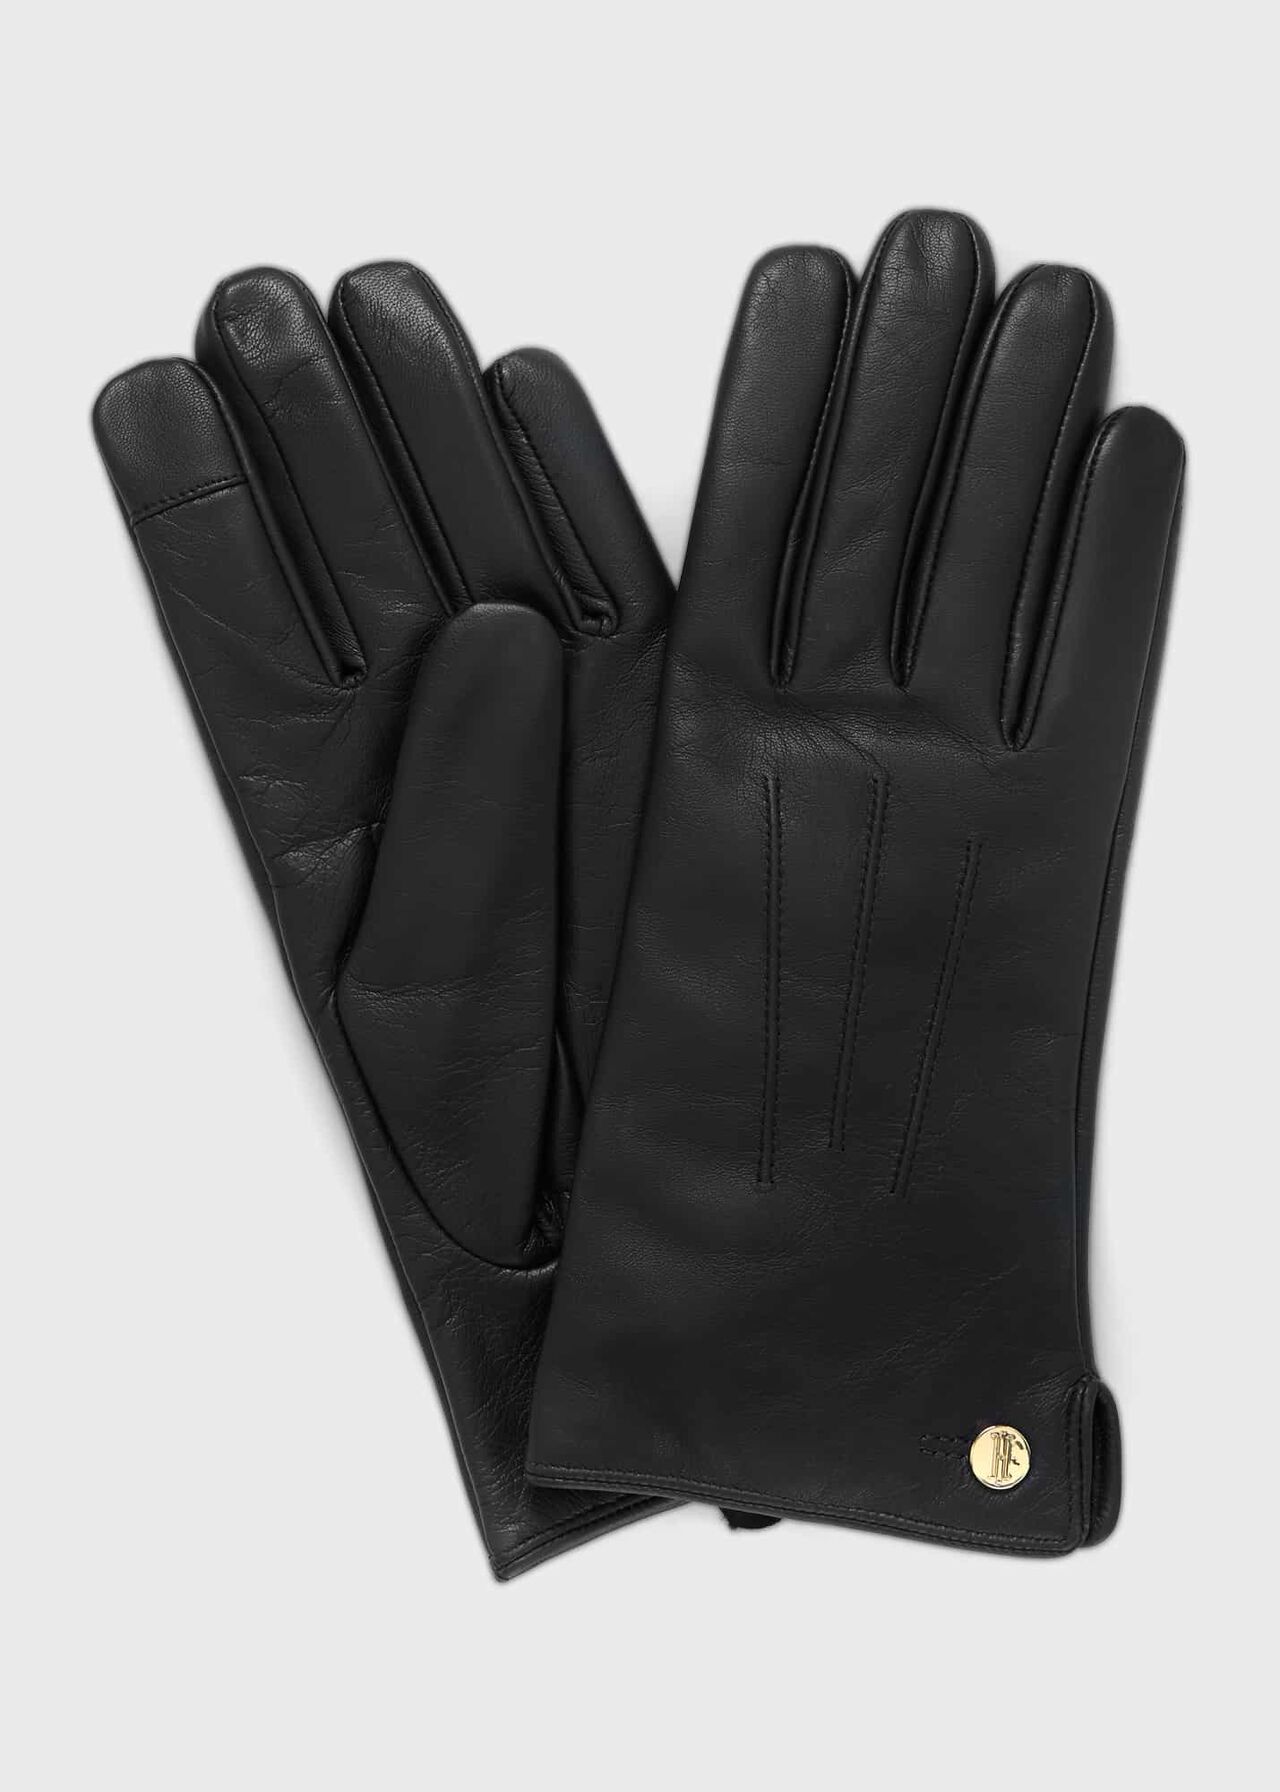 Civic kind eksplosion Otillia Leather Gloves 